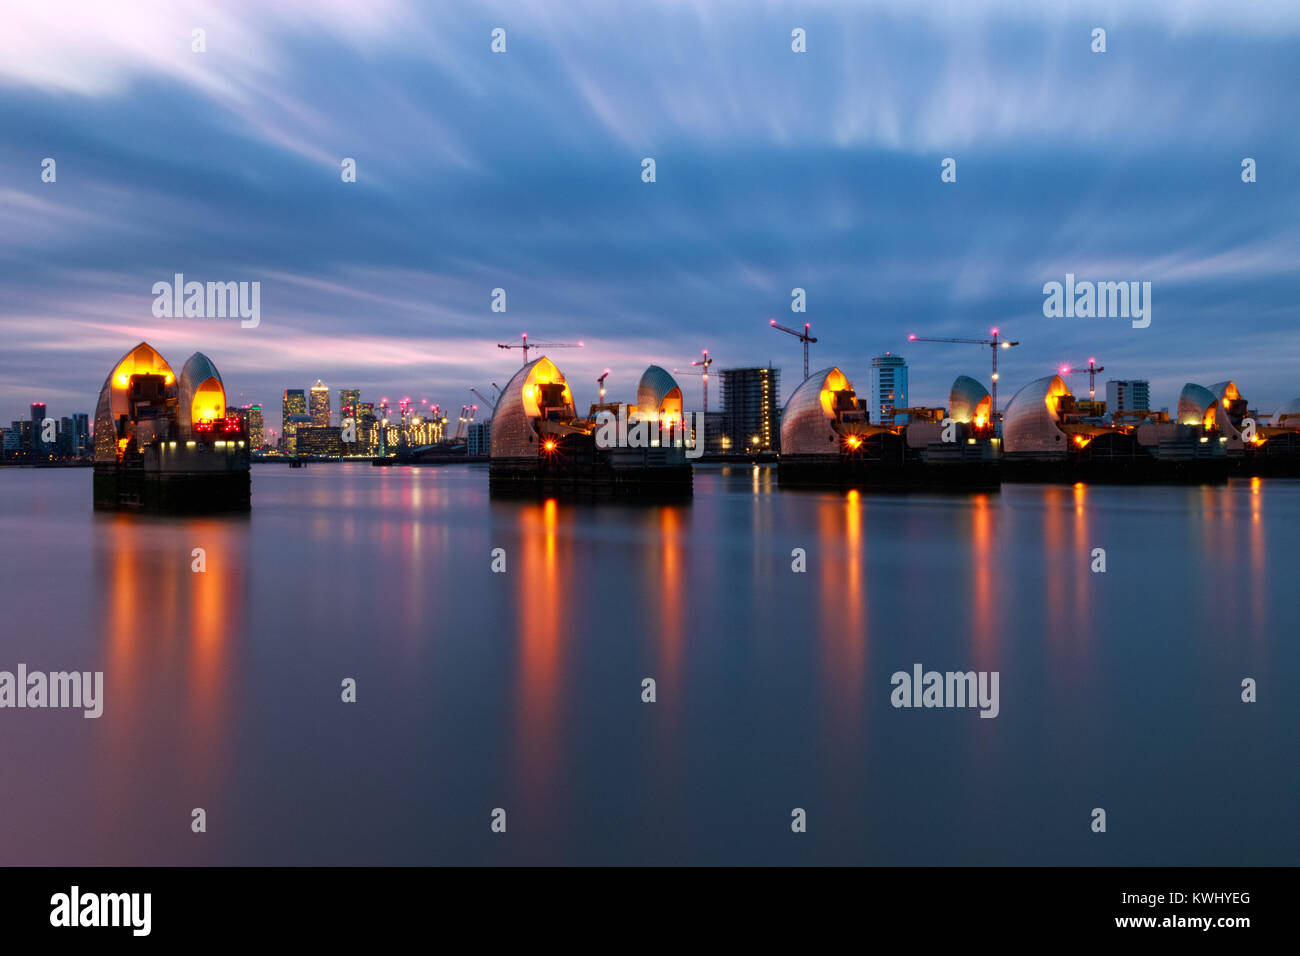 Fotos mit langer Belichtungszeit, Thames Barrier und Canary Wharf in London. Stockfoto